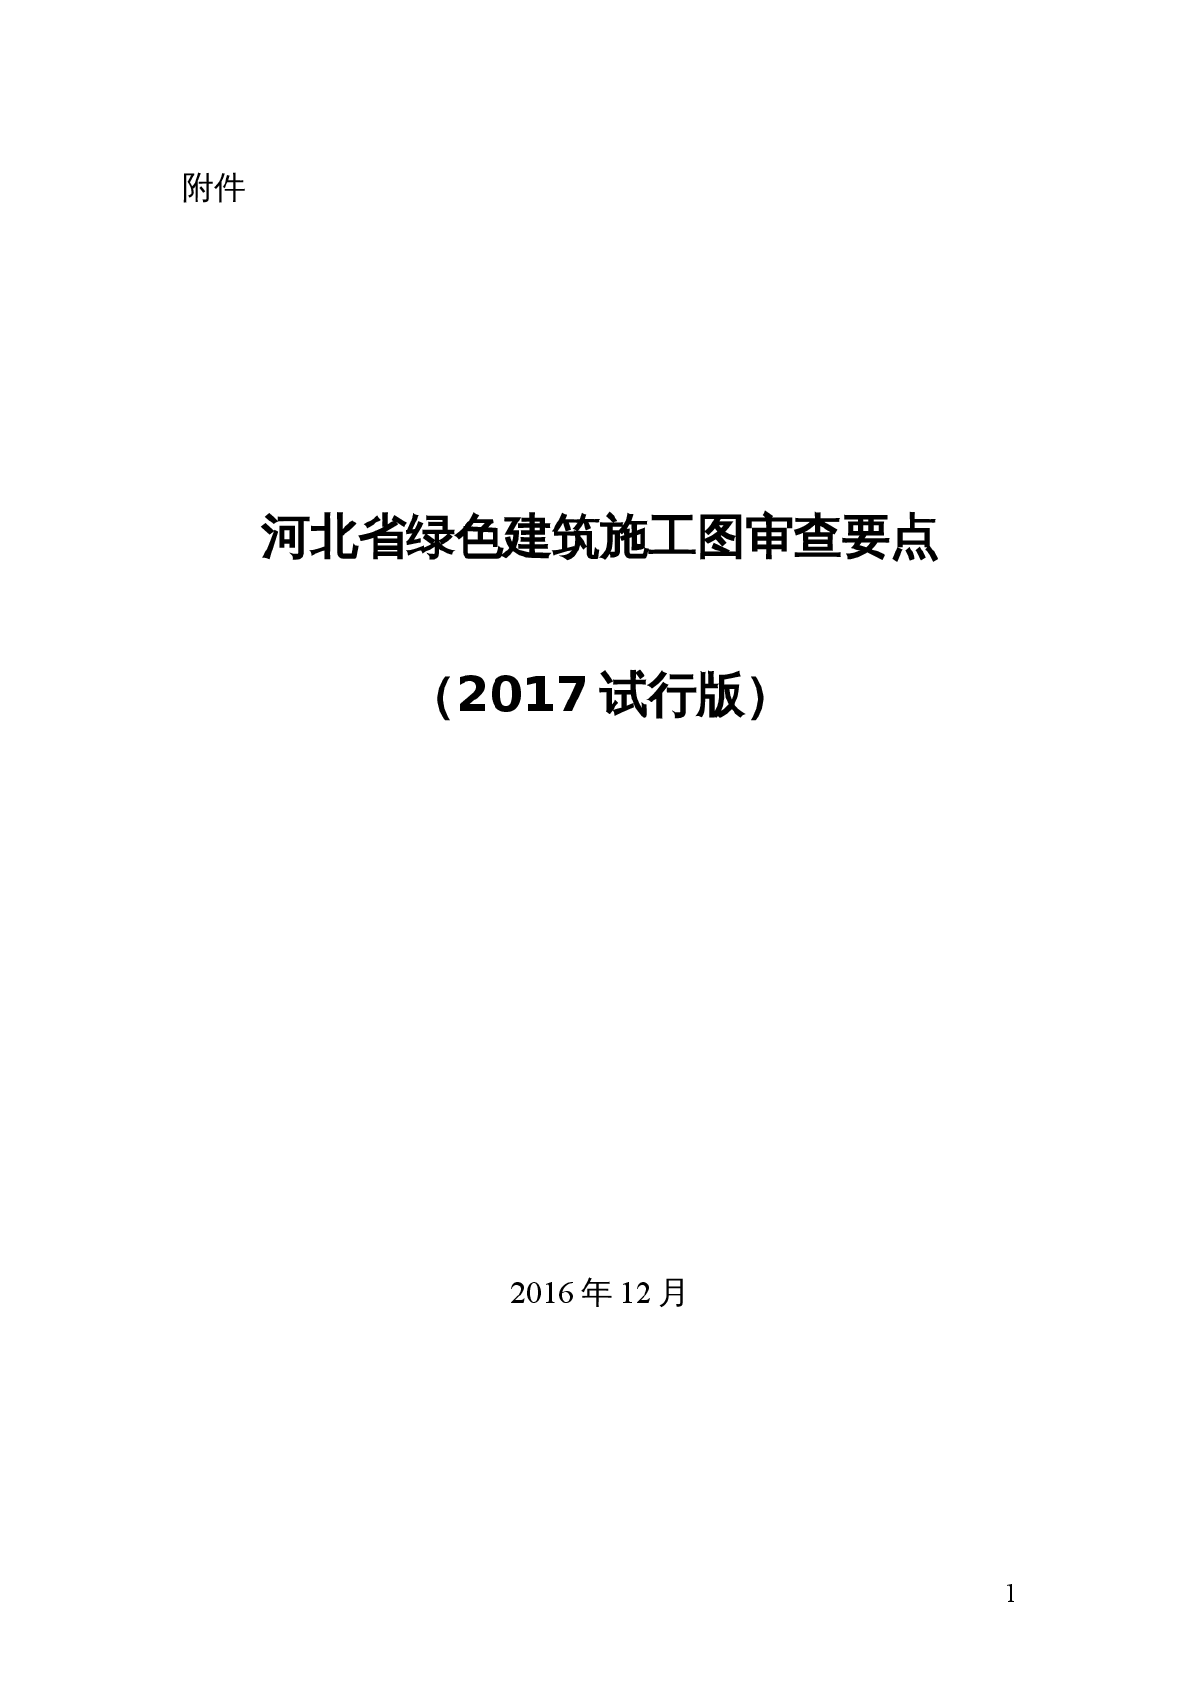 河北省绿色建筑施工图审查要点（2017试行版）